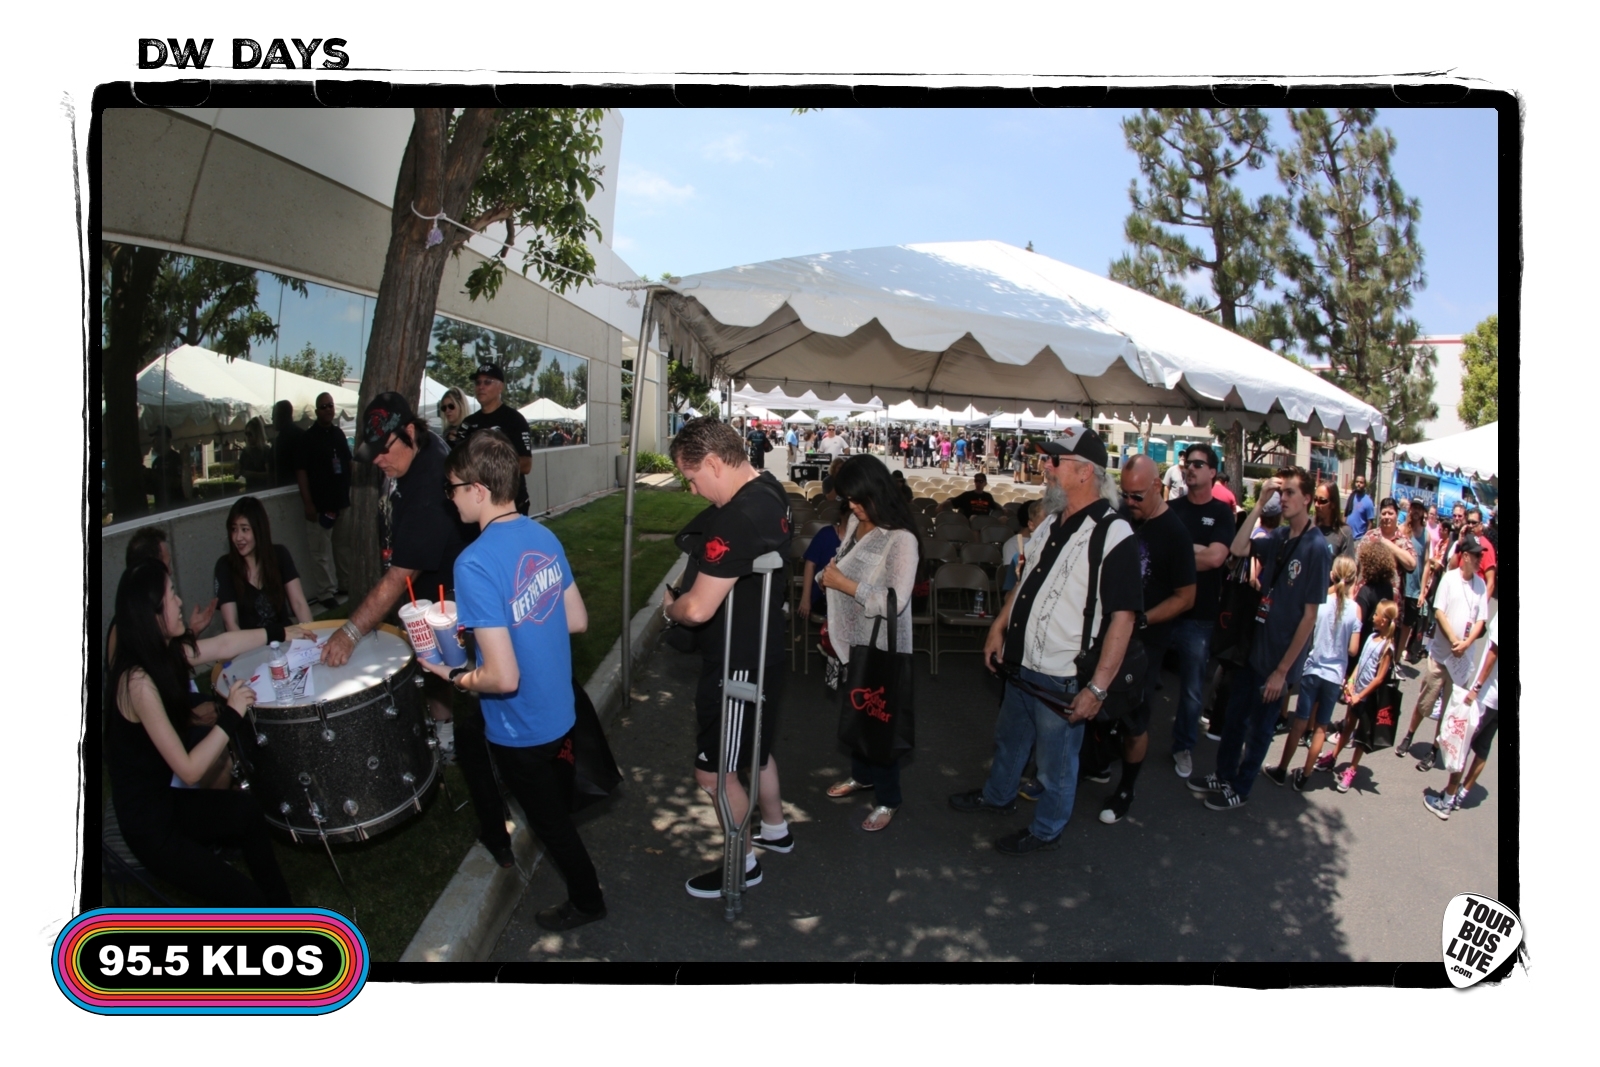 DW Days, 08-05-17, Drum Workshop, Inc., Oxnard, CA. © 2017 TourBusLive.com